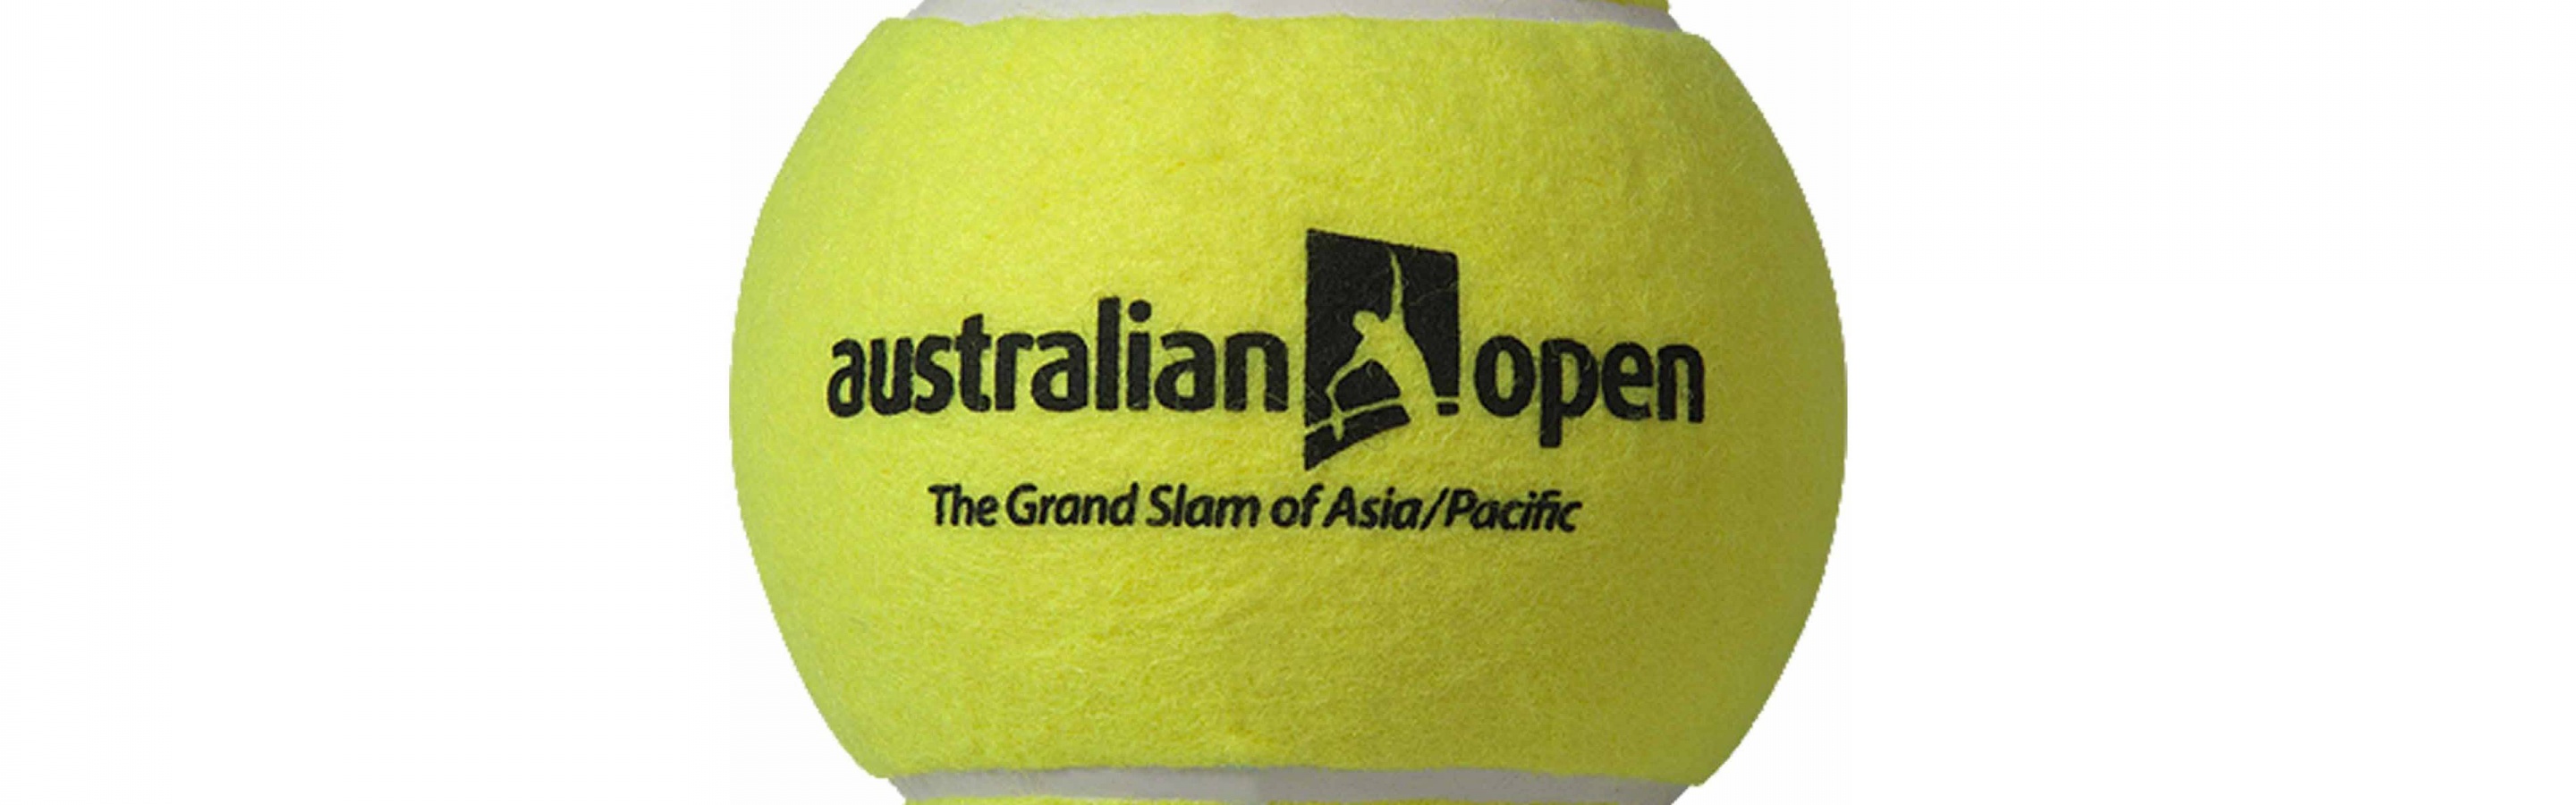 Australian Open 2015 Tennis Ball